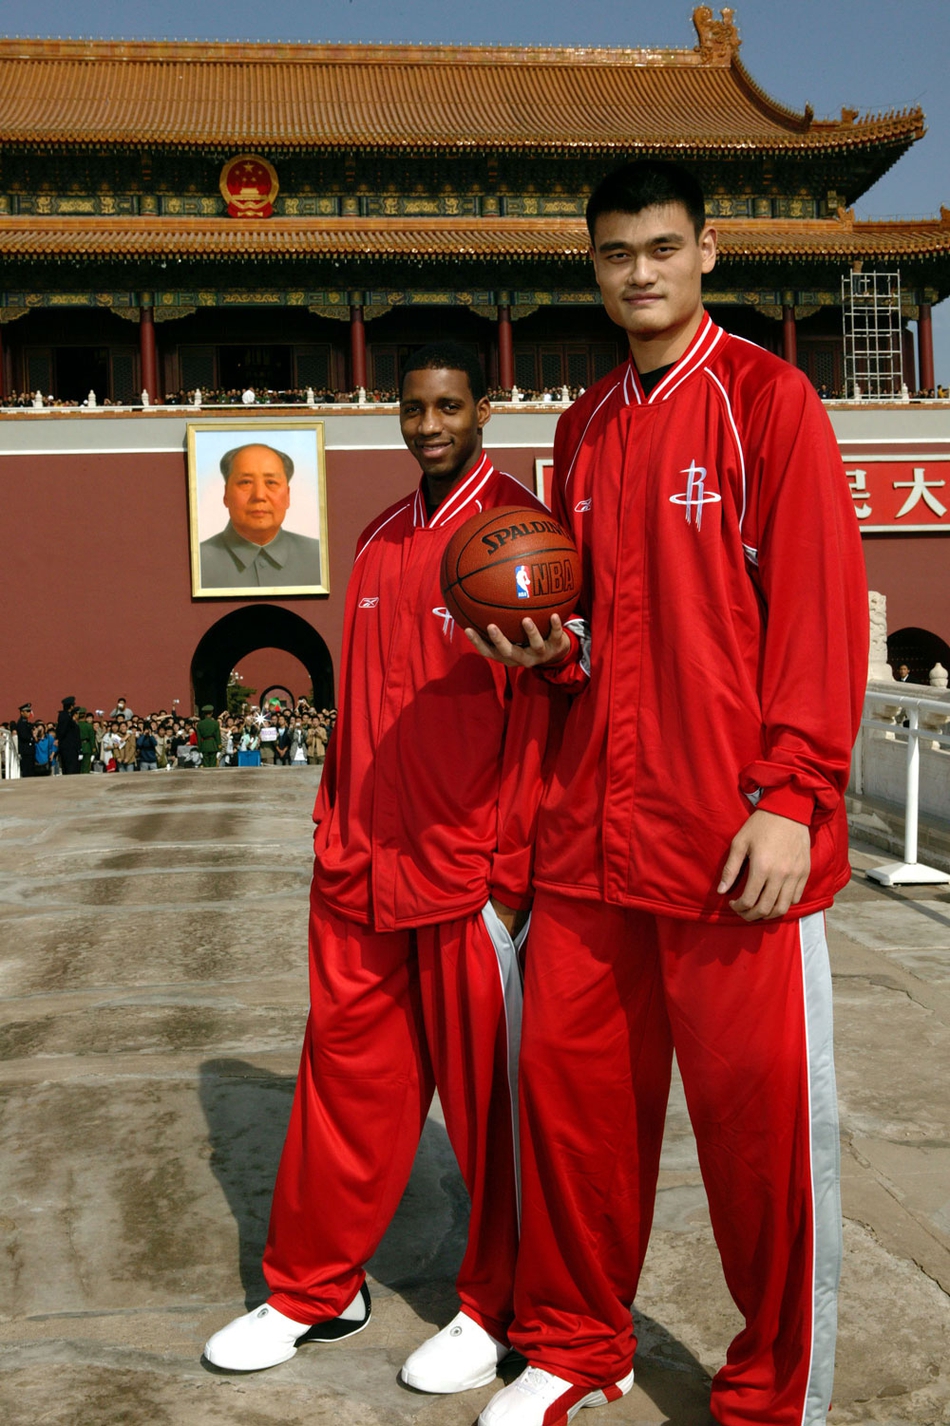 2、2004：姚麦合影天安门；2004年麦蒂转投火箭，这也是姚麦组合首次在正式比赛中携手出战。而他俩也在北京天安门前留下了一张被后世奉为经典的照片。